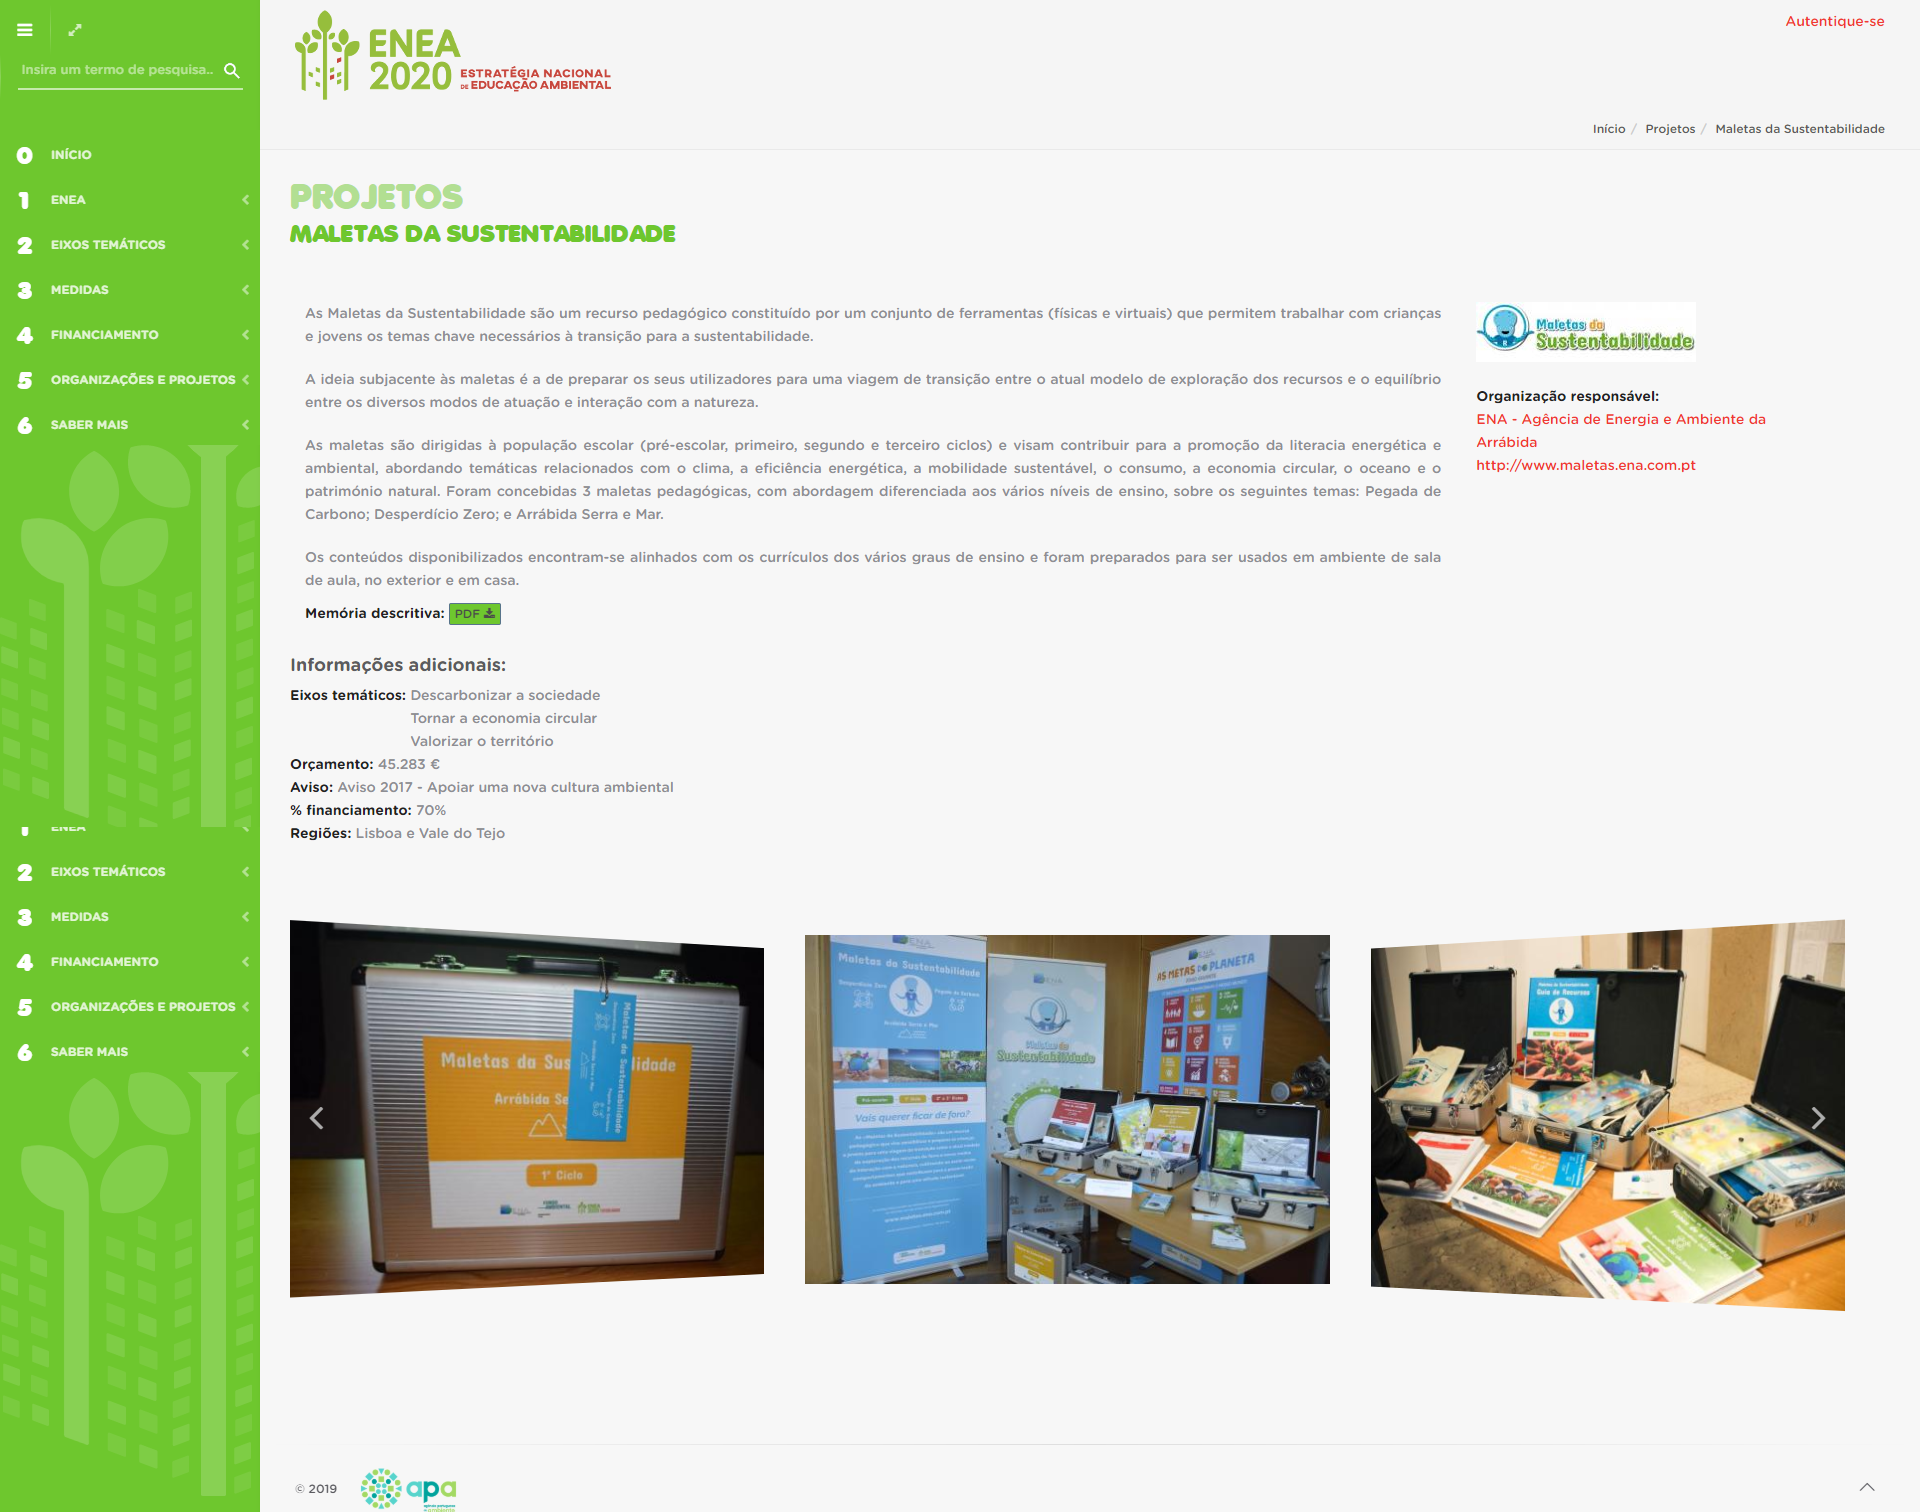 Maletas da Sustentabilidade no website da APA - ENEA